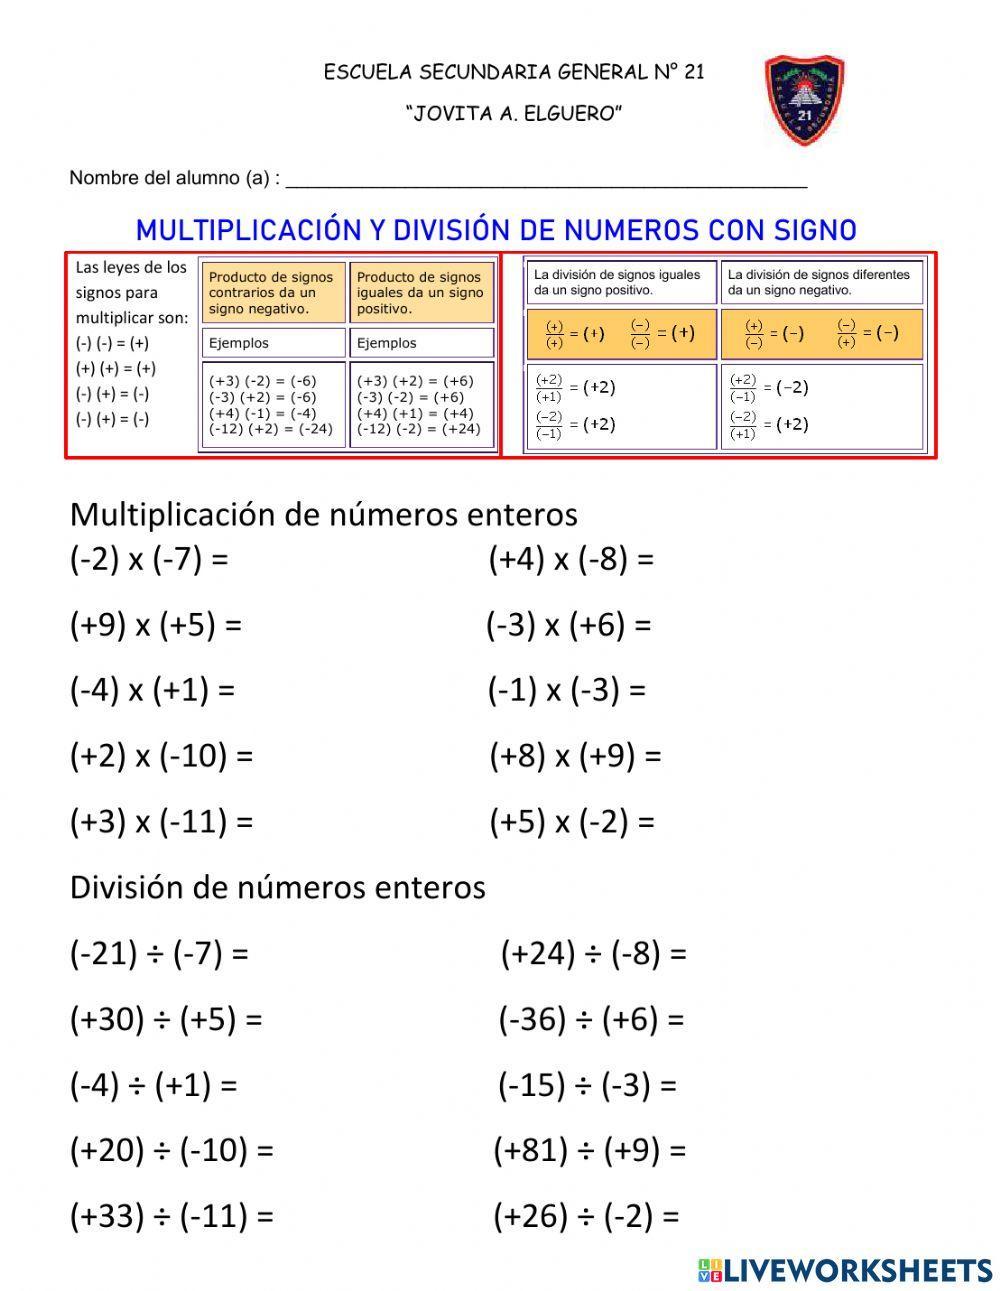 Multiplicación y división de números enteros